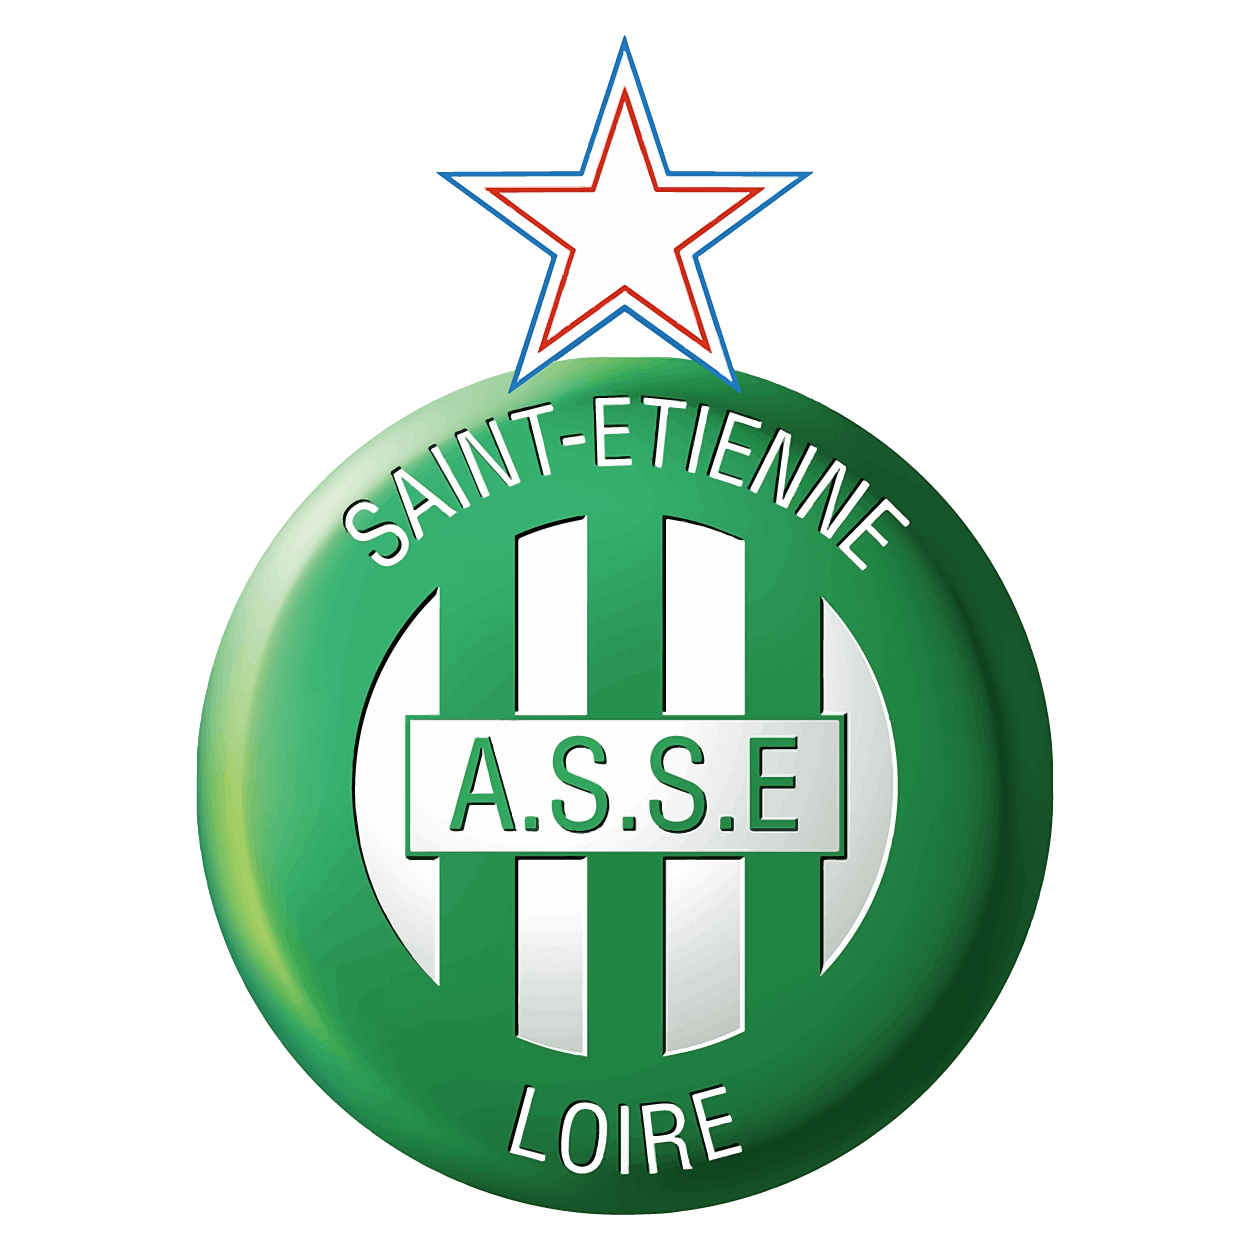 Etienne Logo png